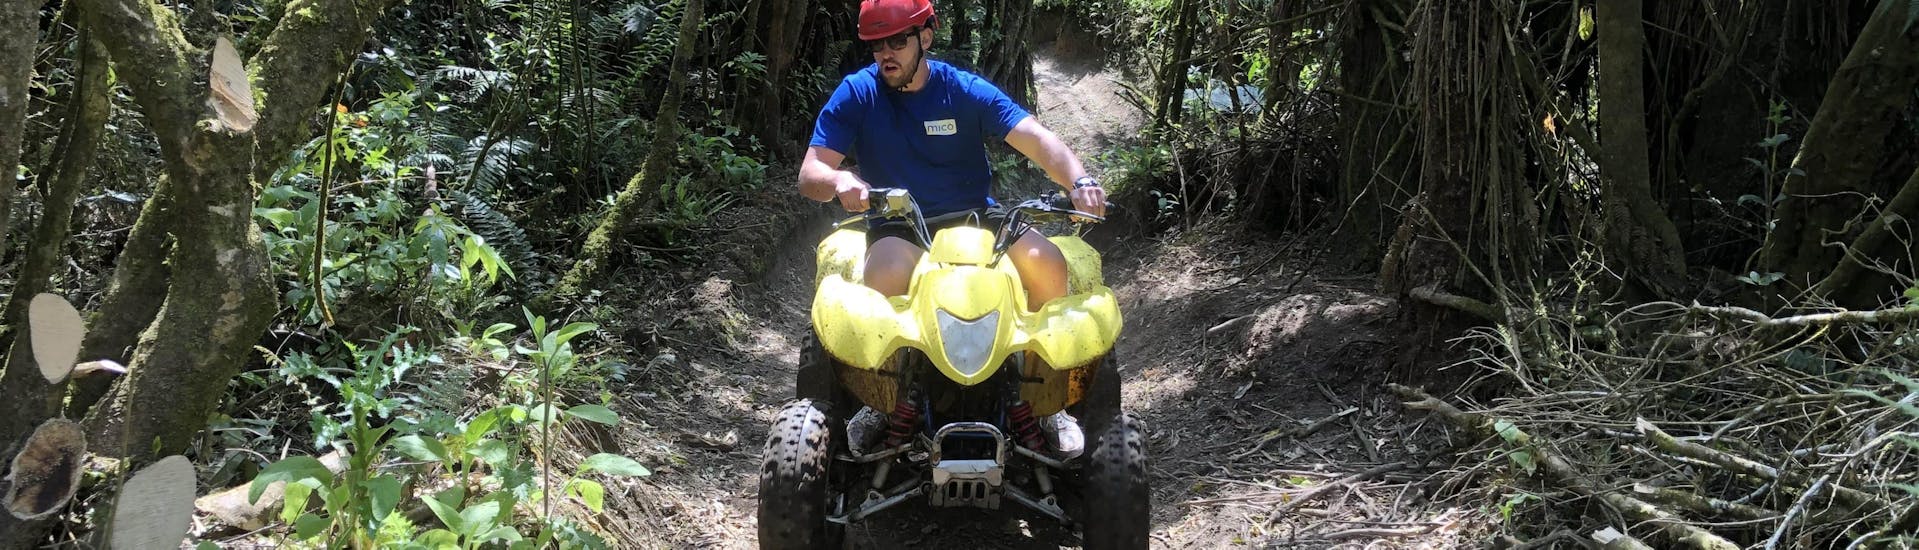 quad-biking-safari-in-taupo-taupo-quad-adventures-hero